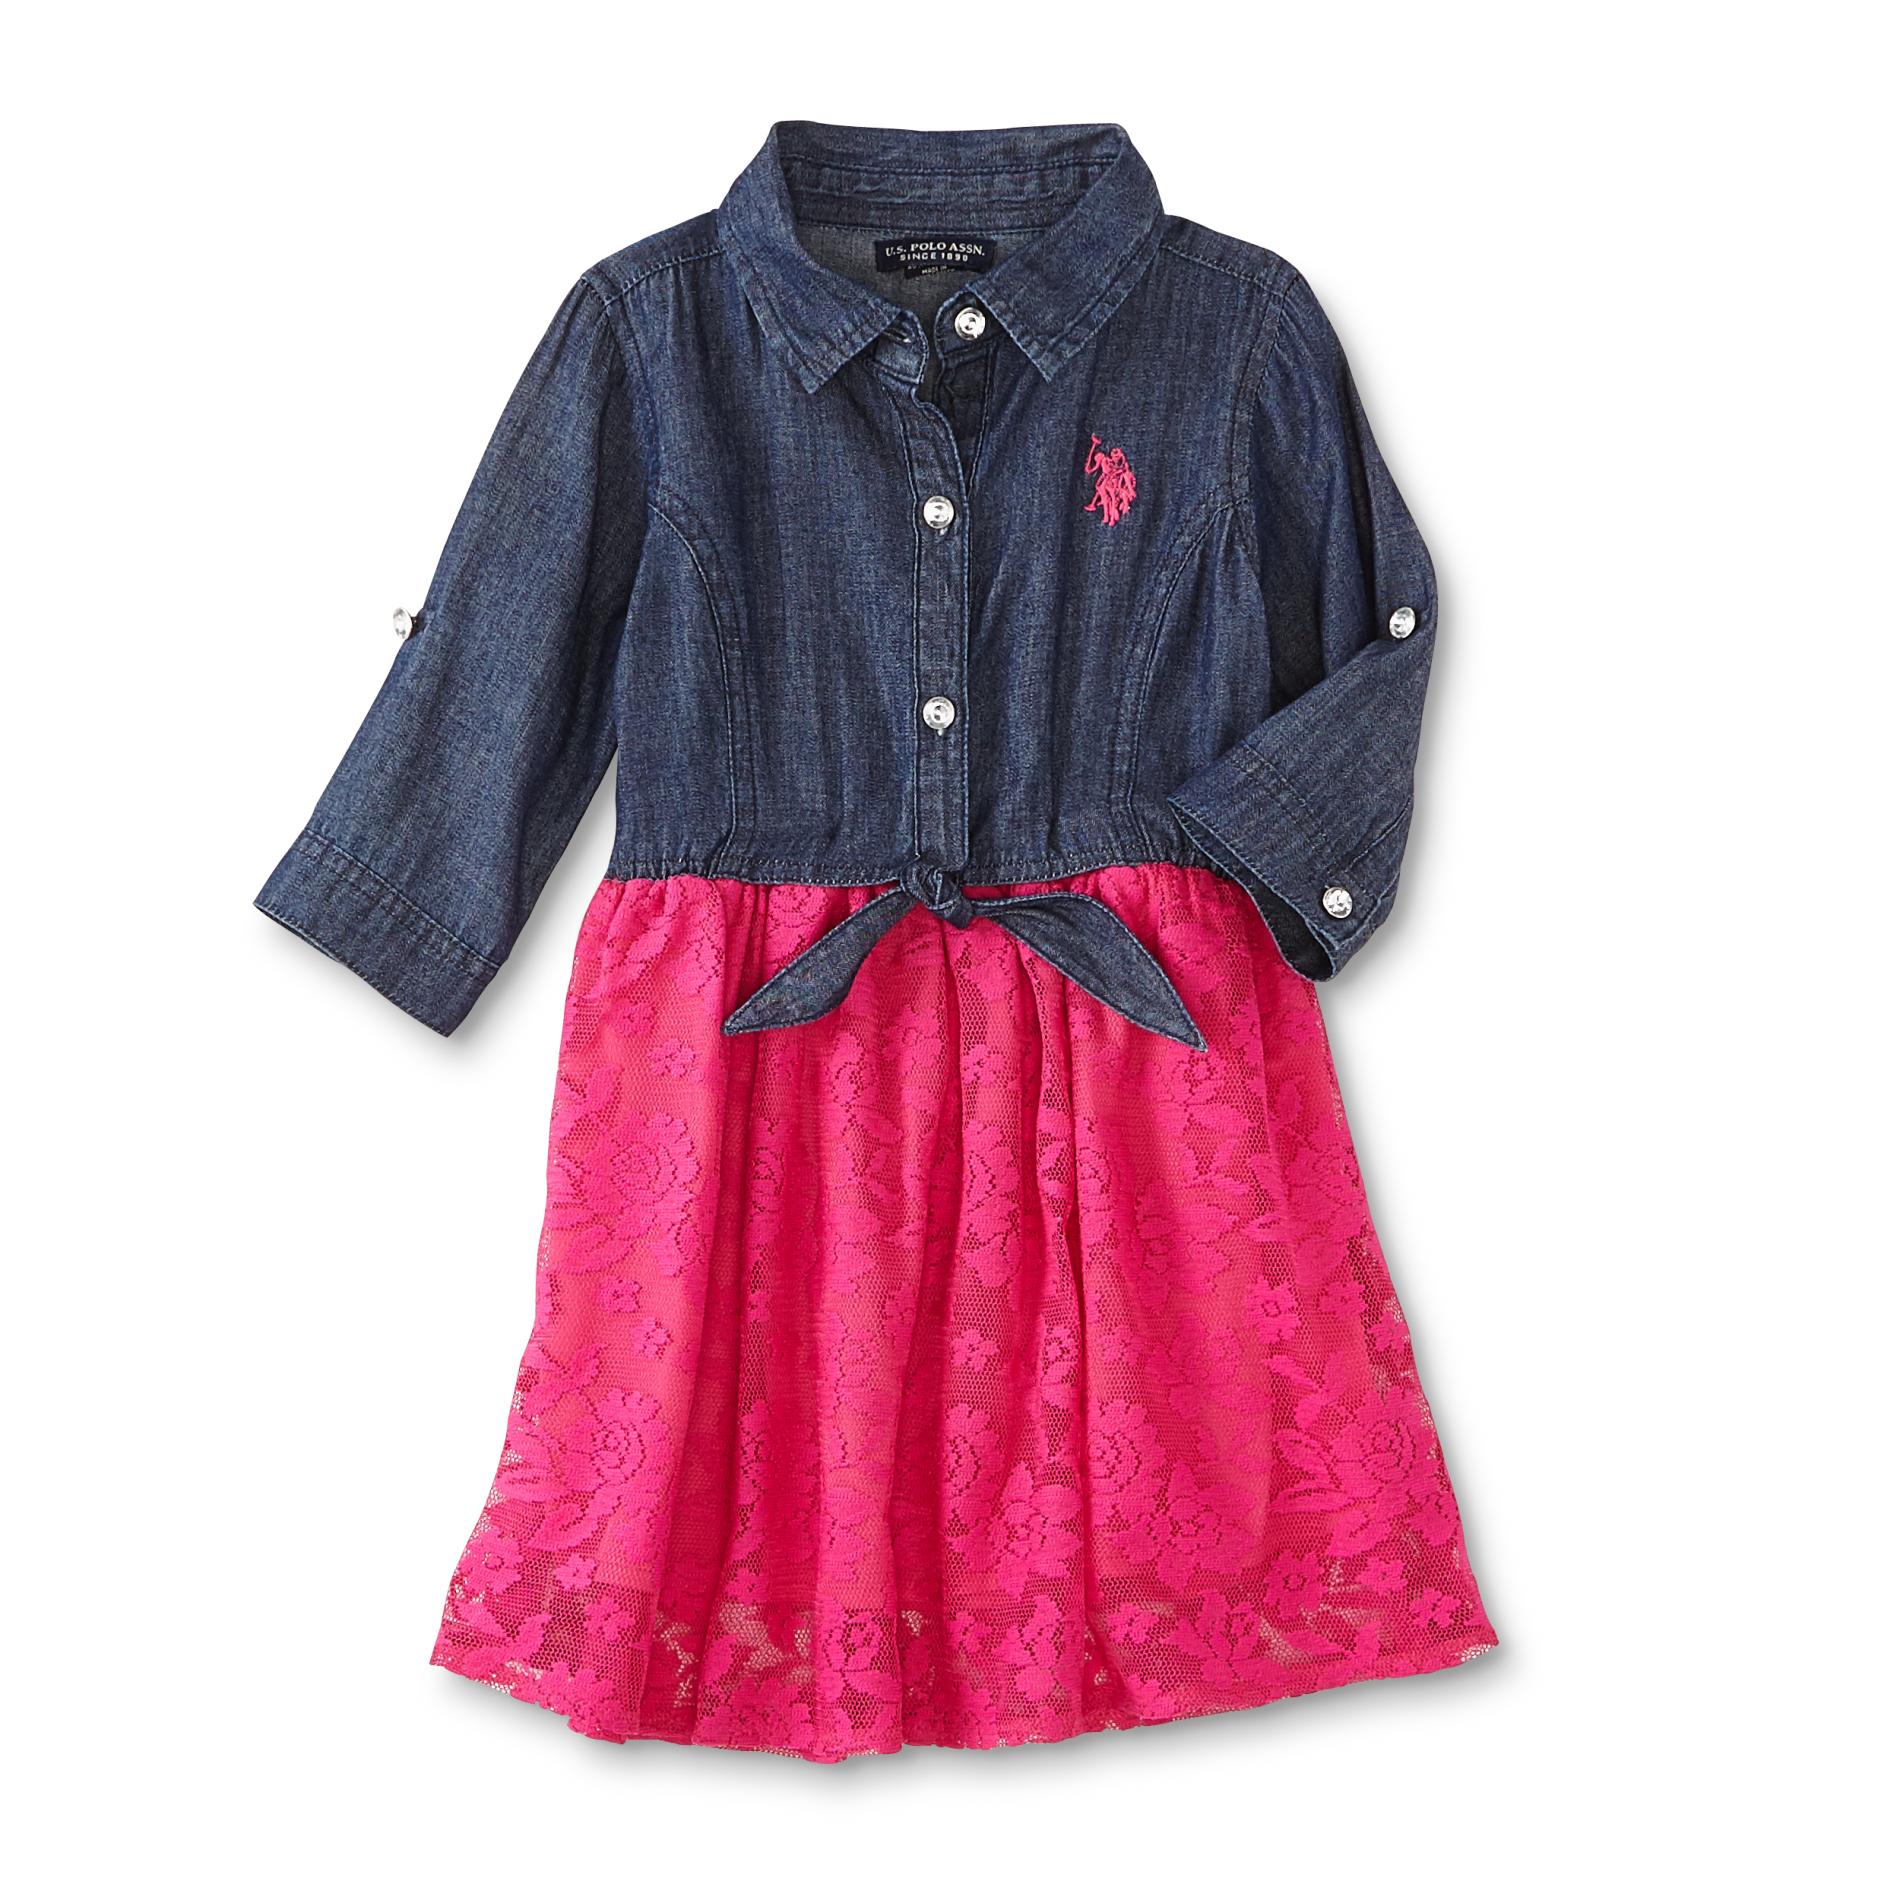 U.S. Polo Assn. Infant & Toddler Girls' Long-Sleeve Dress